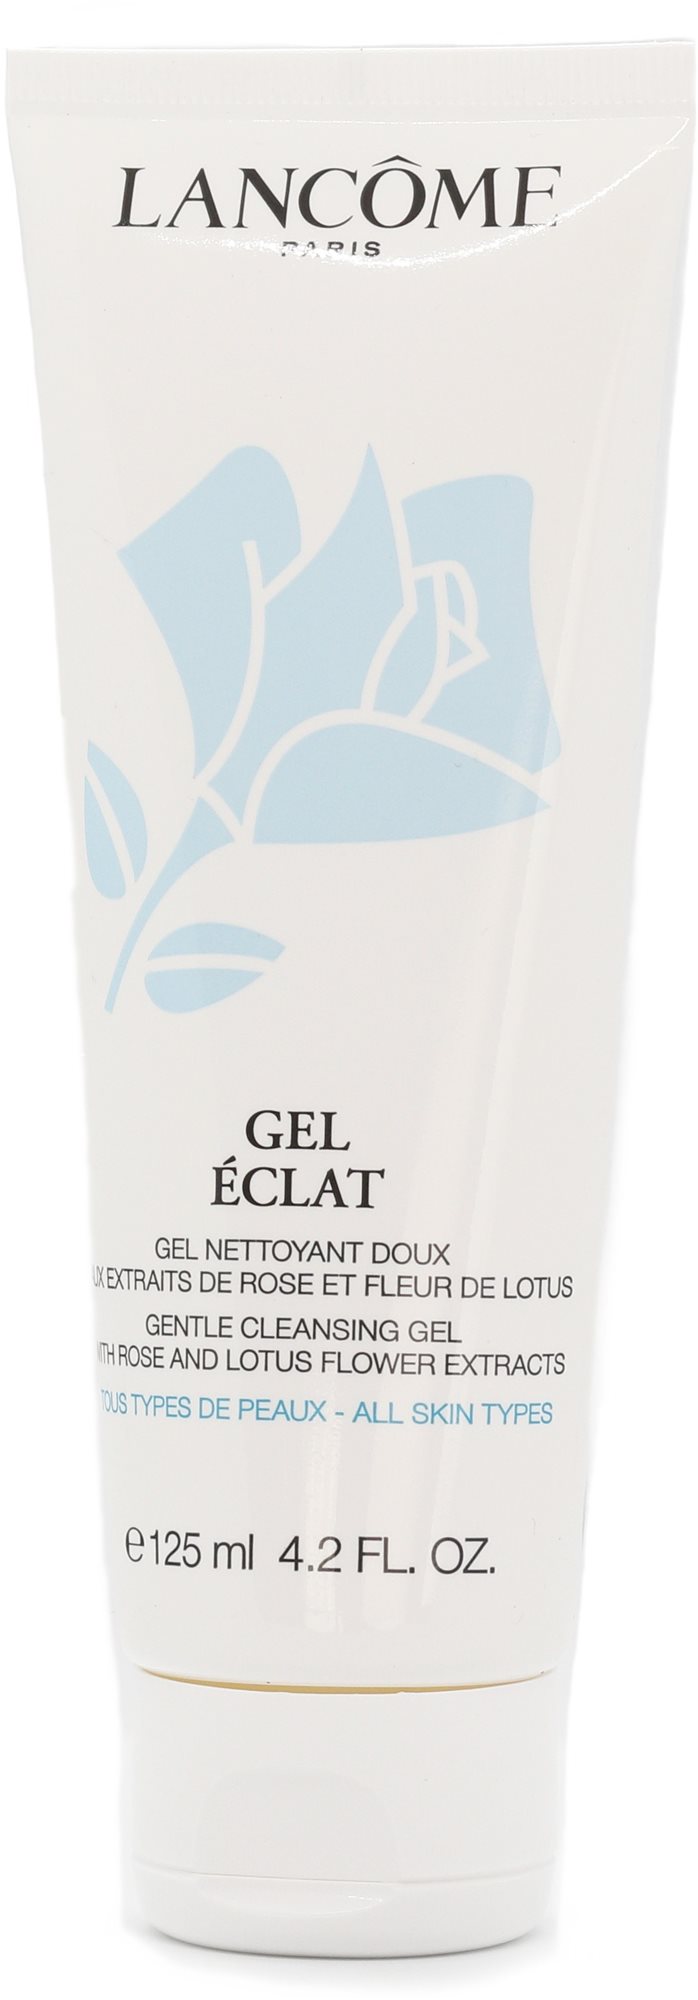 LANCÔME Gel Eclat-Gentle Cleansing Gel 125 ml